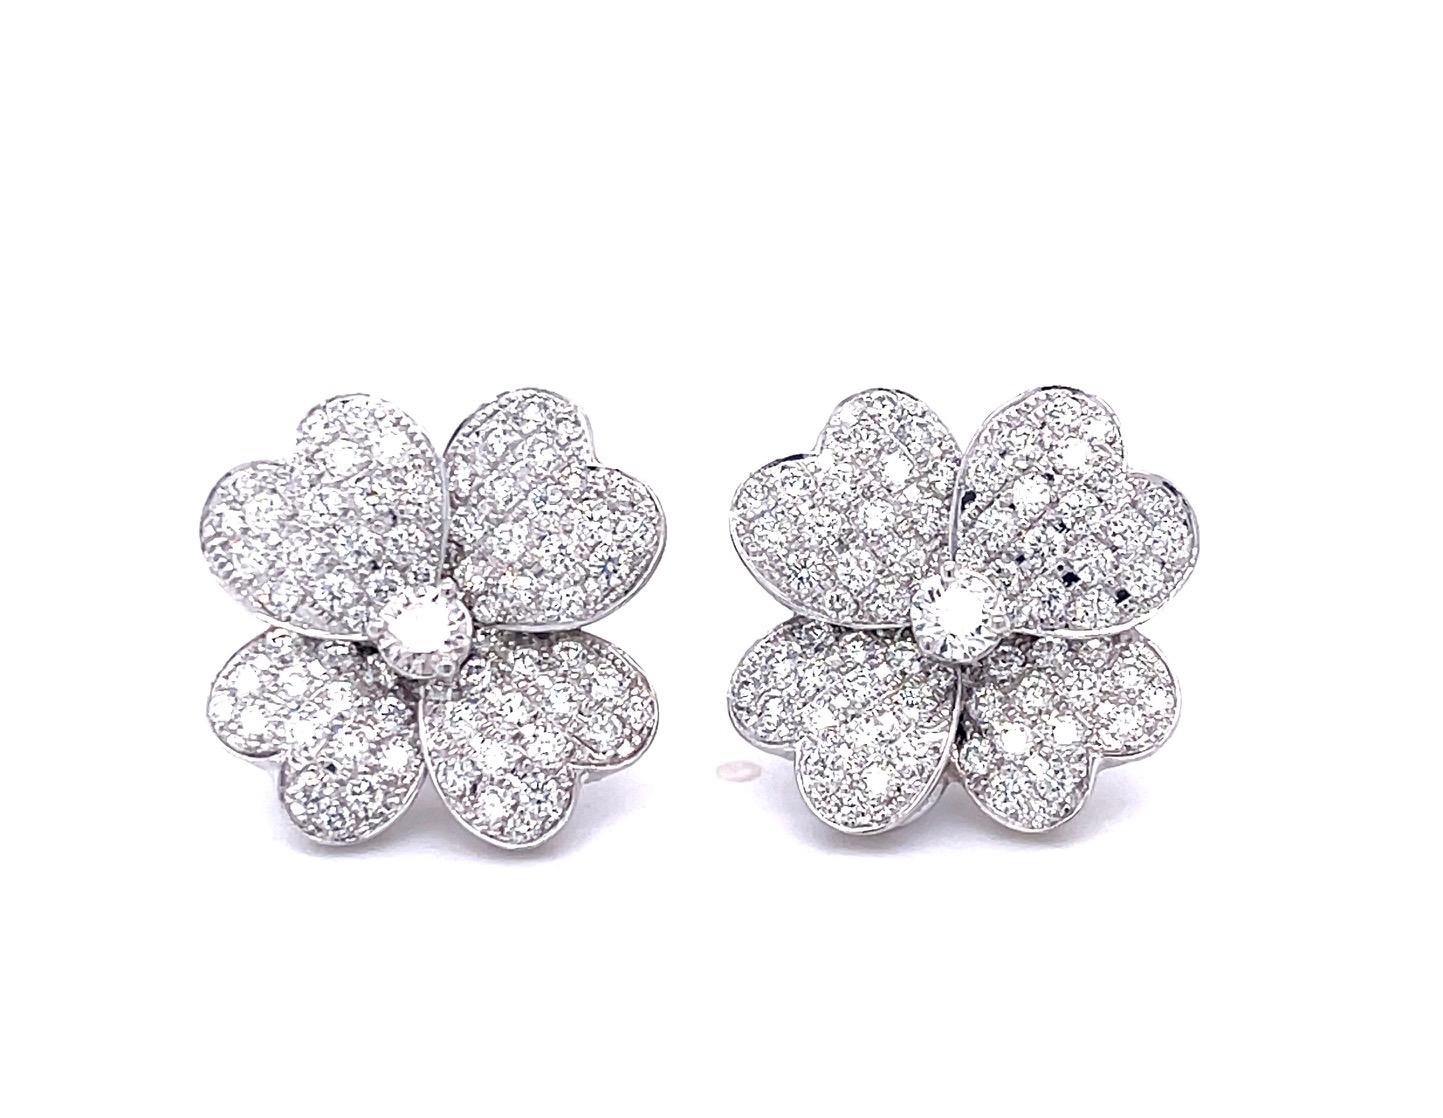  Diamond Clover Earrings, Set in 18k White Gold For Sale